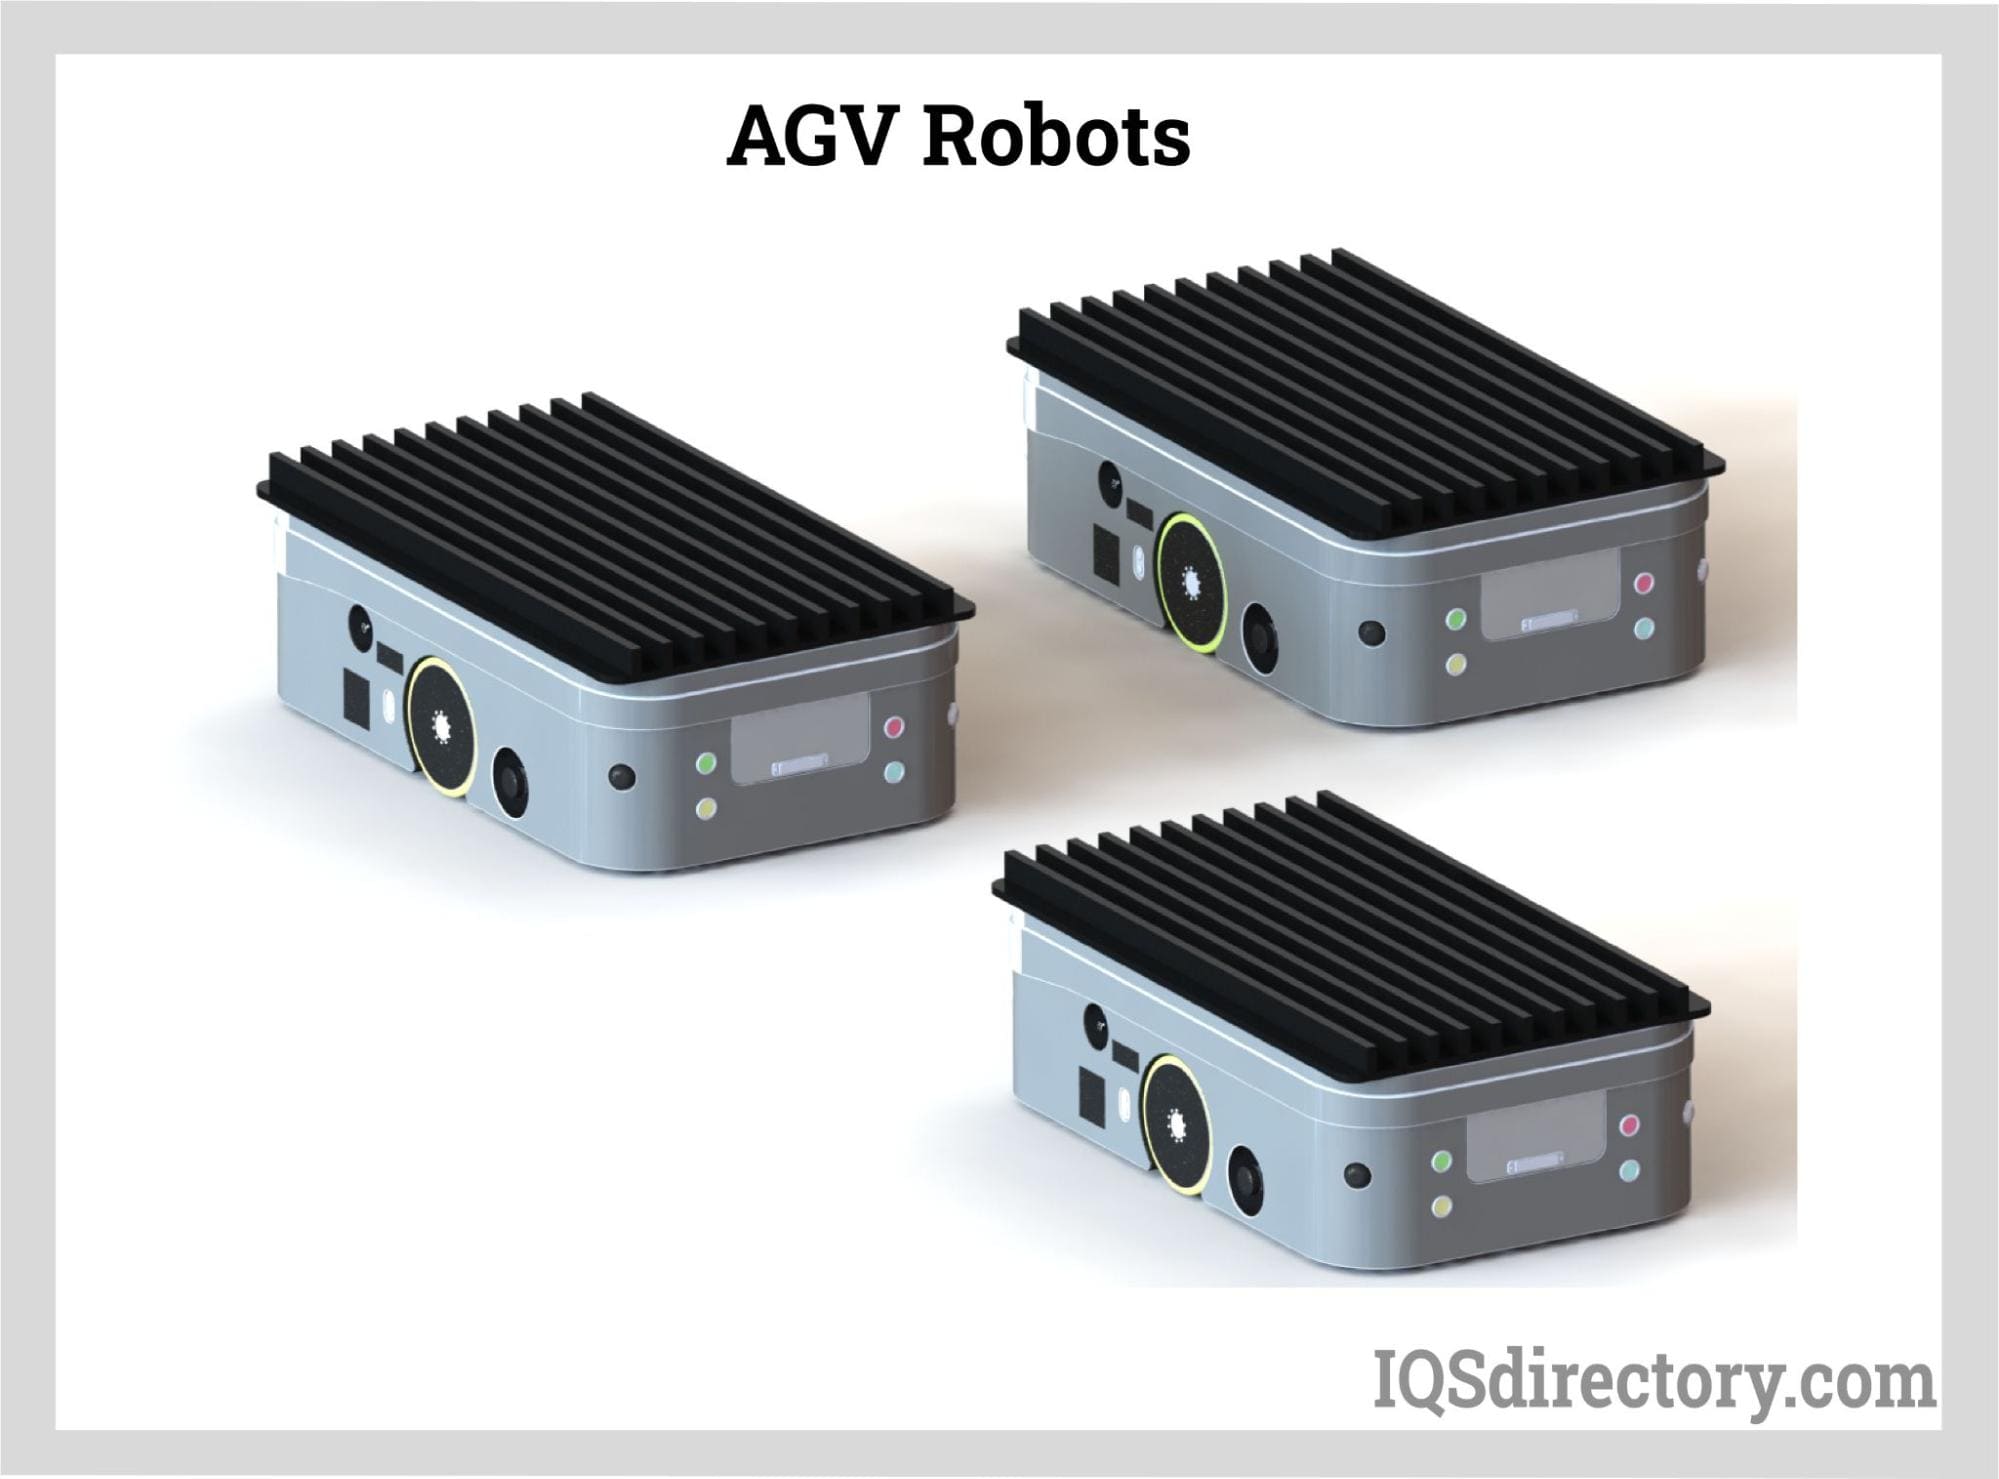 AGV Robots